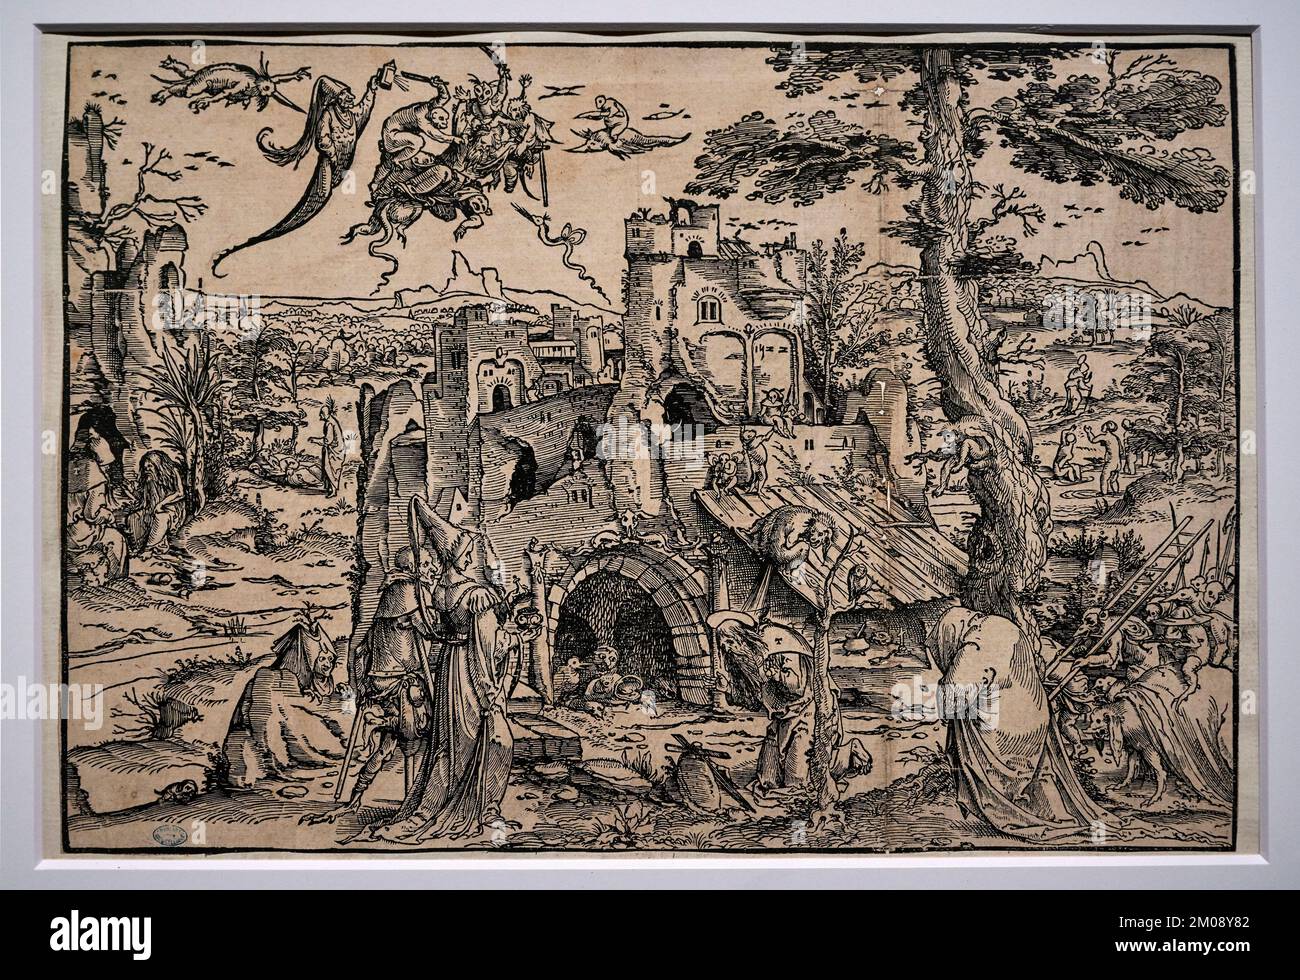 Paesaggio con le tentazioni di Sant’ Antonio - xilografia - Maestro J. Kock - 1522 - Firenze, Biblioteca Marucelliana Banque D'Images